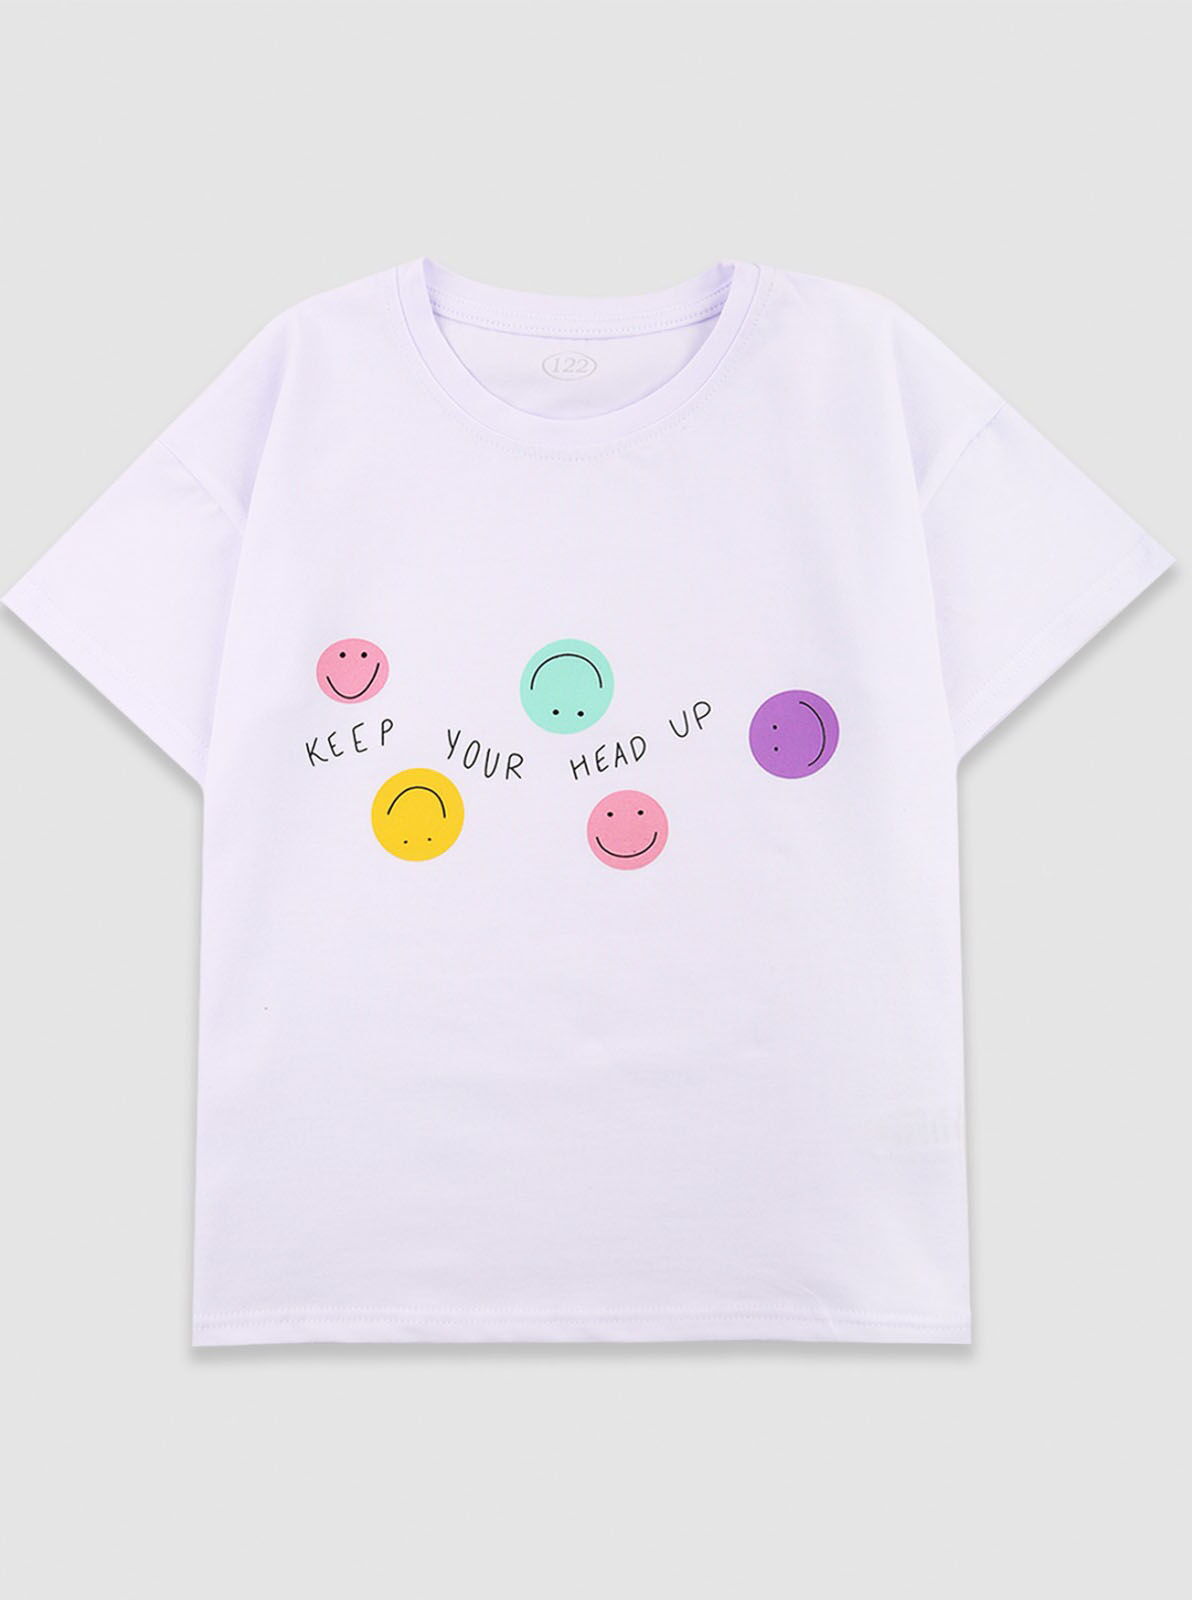 Футболка для девочки Фламинго Smile белая 778-061 - цена